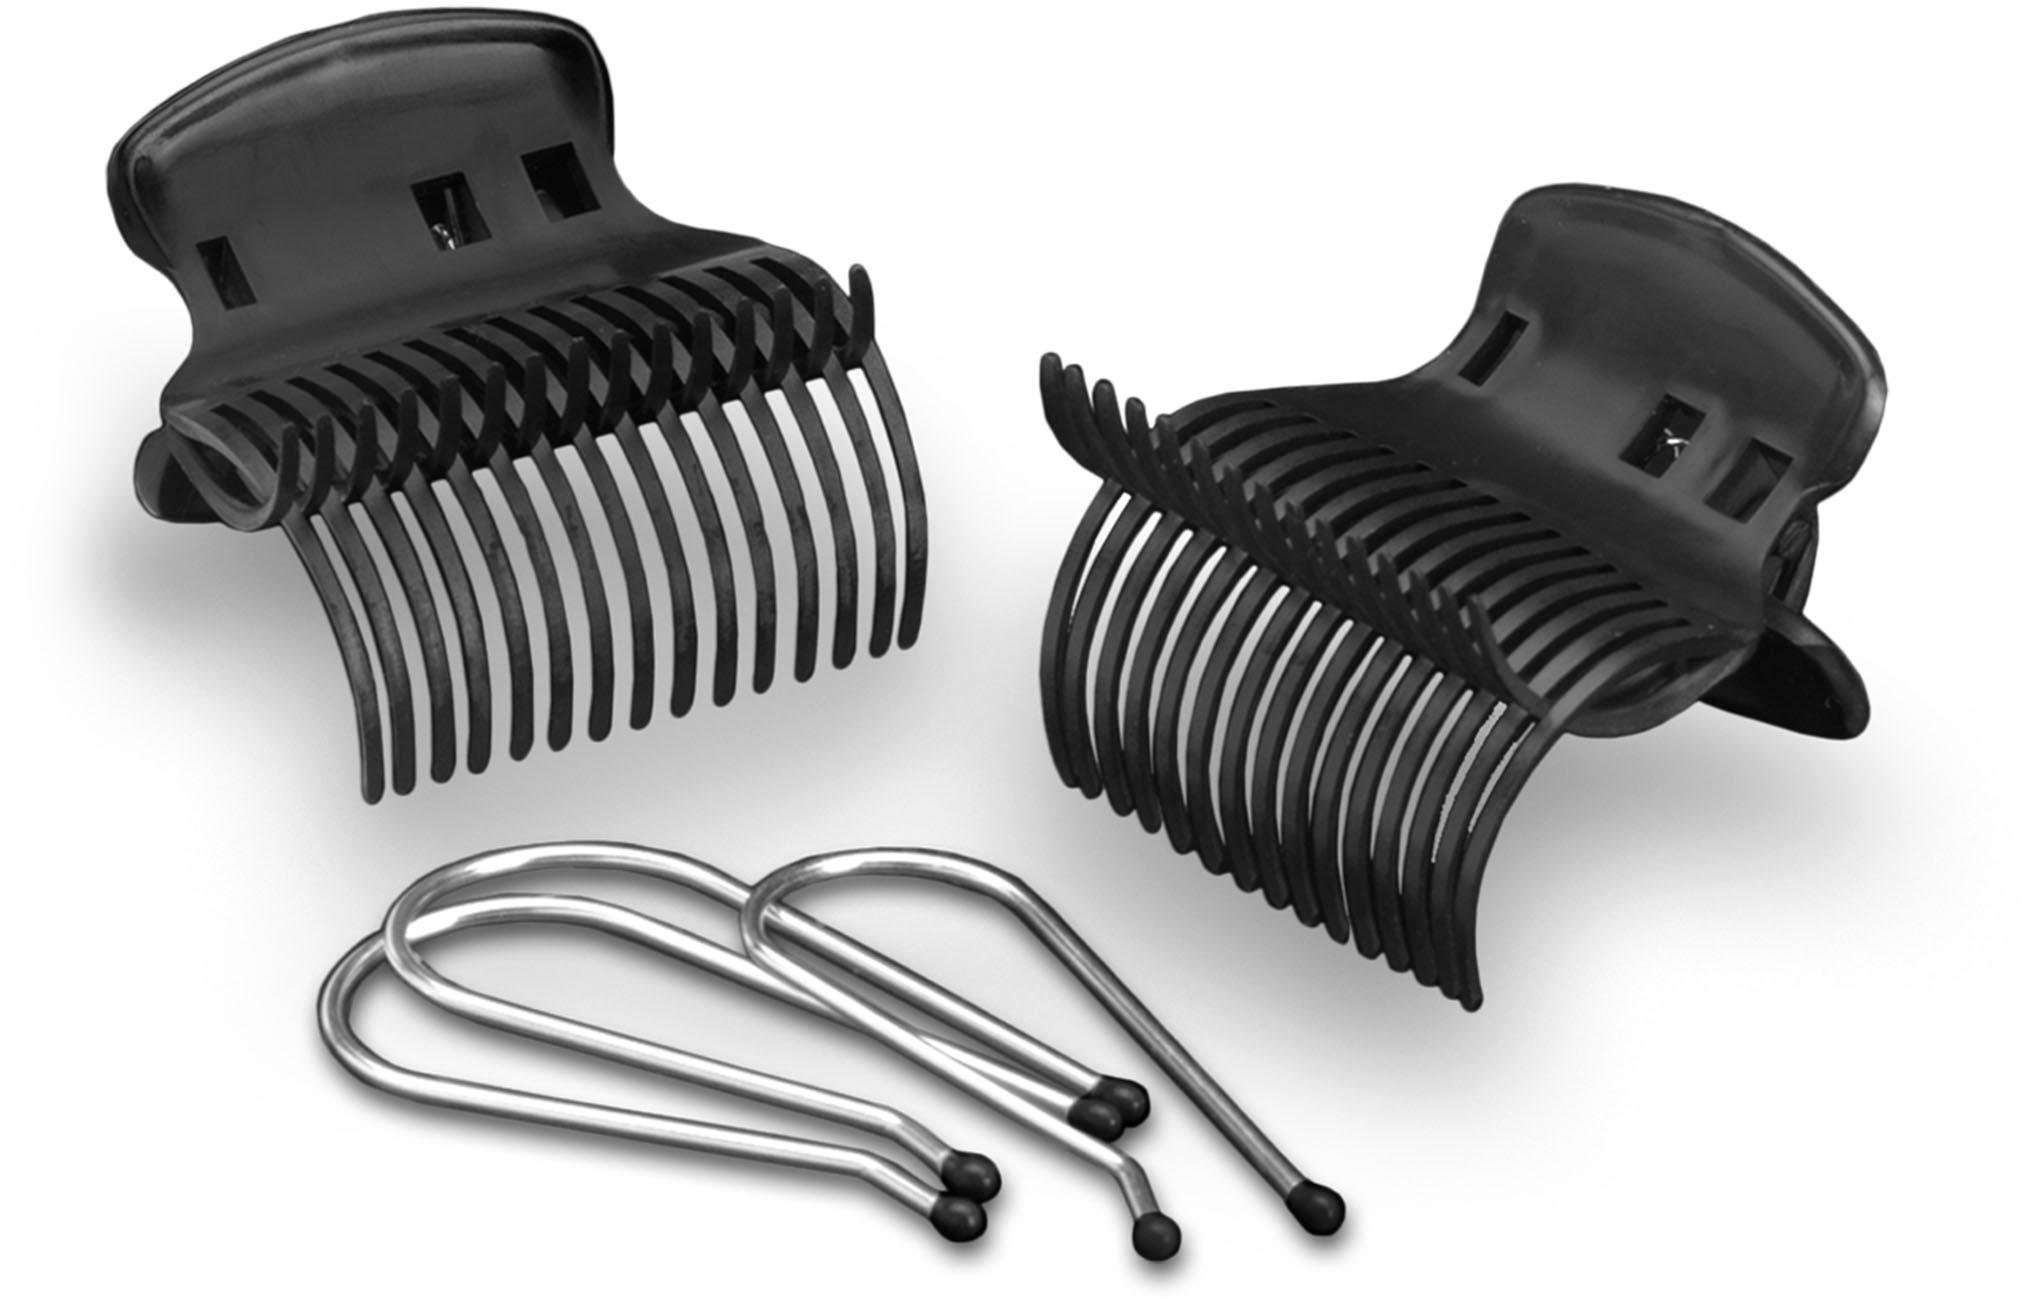 Haushalt Haarstyling BaByliss Heizwickler RS035E Thermo-Ceramic Rollers, aufheizbare Lockenwickler für schöne Locken